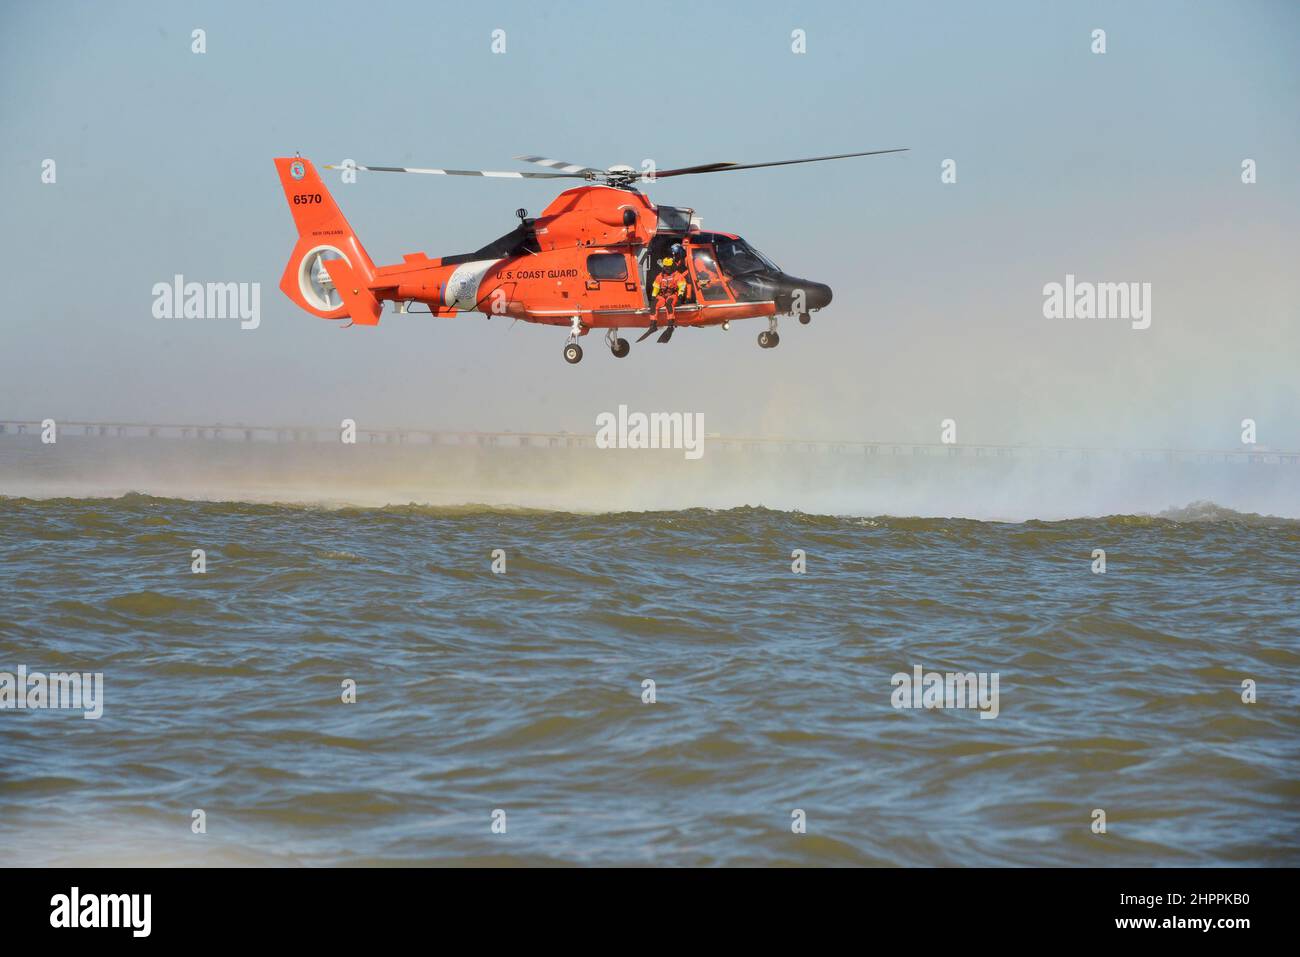 Técnico de Supervivencia de la Aviación de Primera Clase Kenneth Wood se prepara para desplegar desde un helicóptero MH-60 desde la Estación Aérea de Nueva Orleans el 15th de febrero, en el Lago Pontchartrain en Louisiana. Esta capacitación es para el despliegue seguro y la recuperación de un Técnico de Supervivencia Aérea durante las operaciones de rescate. (EE.UU Foto de la Guardia Costera por PA3 Riley Perkofski) Foto de stock